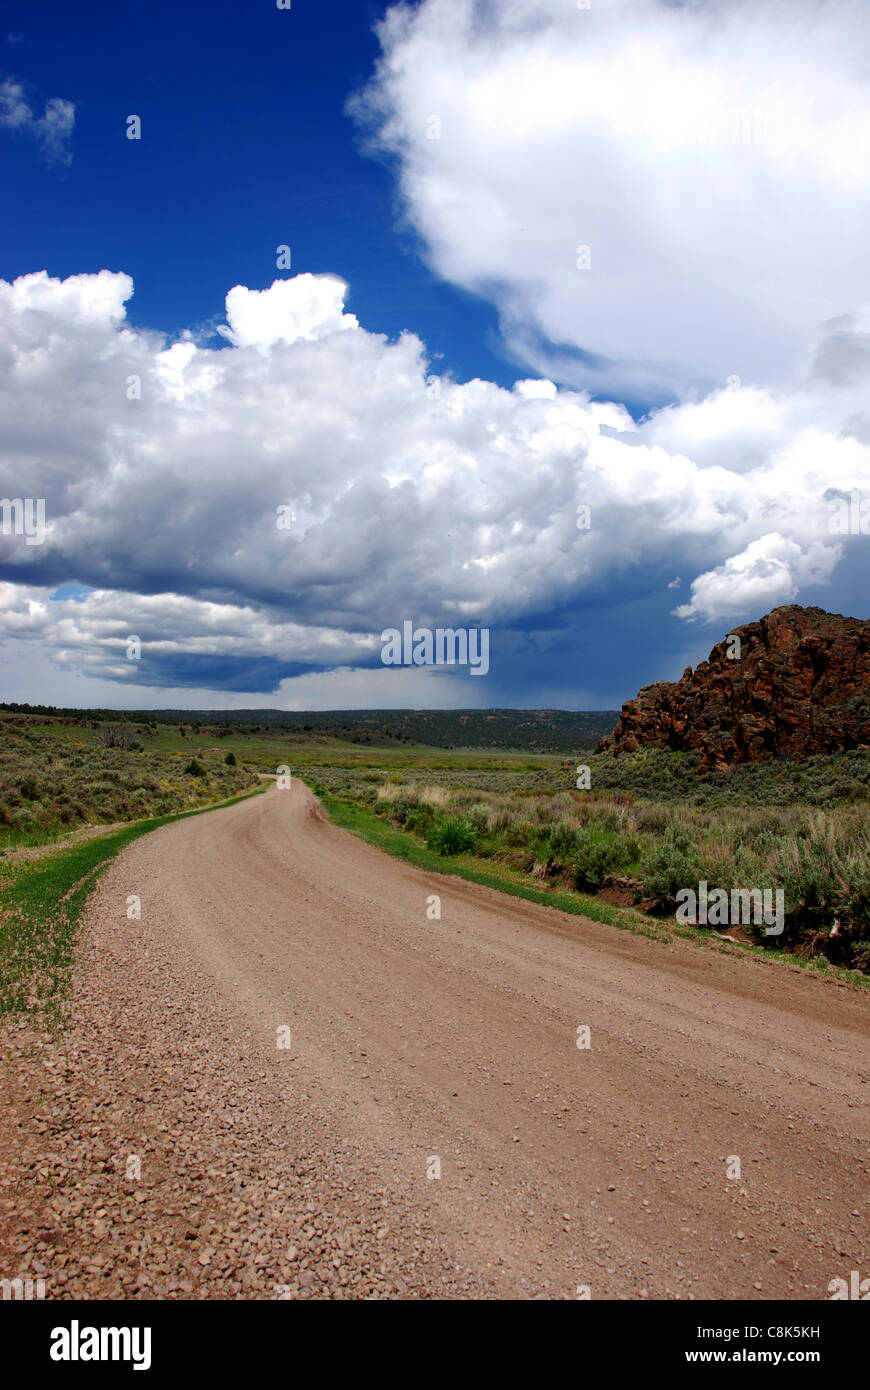 Mud Flat Road, Owyhee derivación escénica, una tormenta en el horizonte Foto de stock